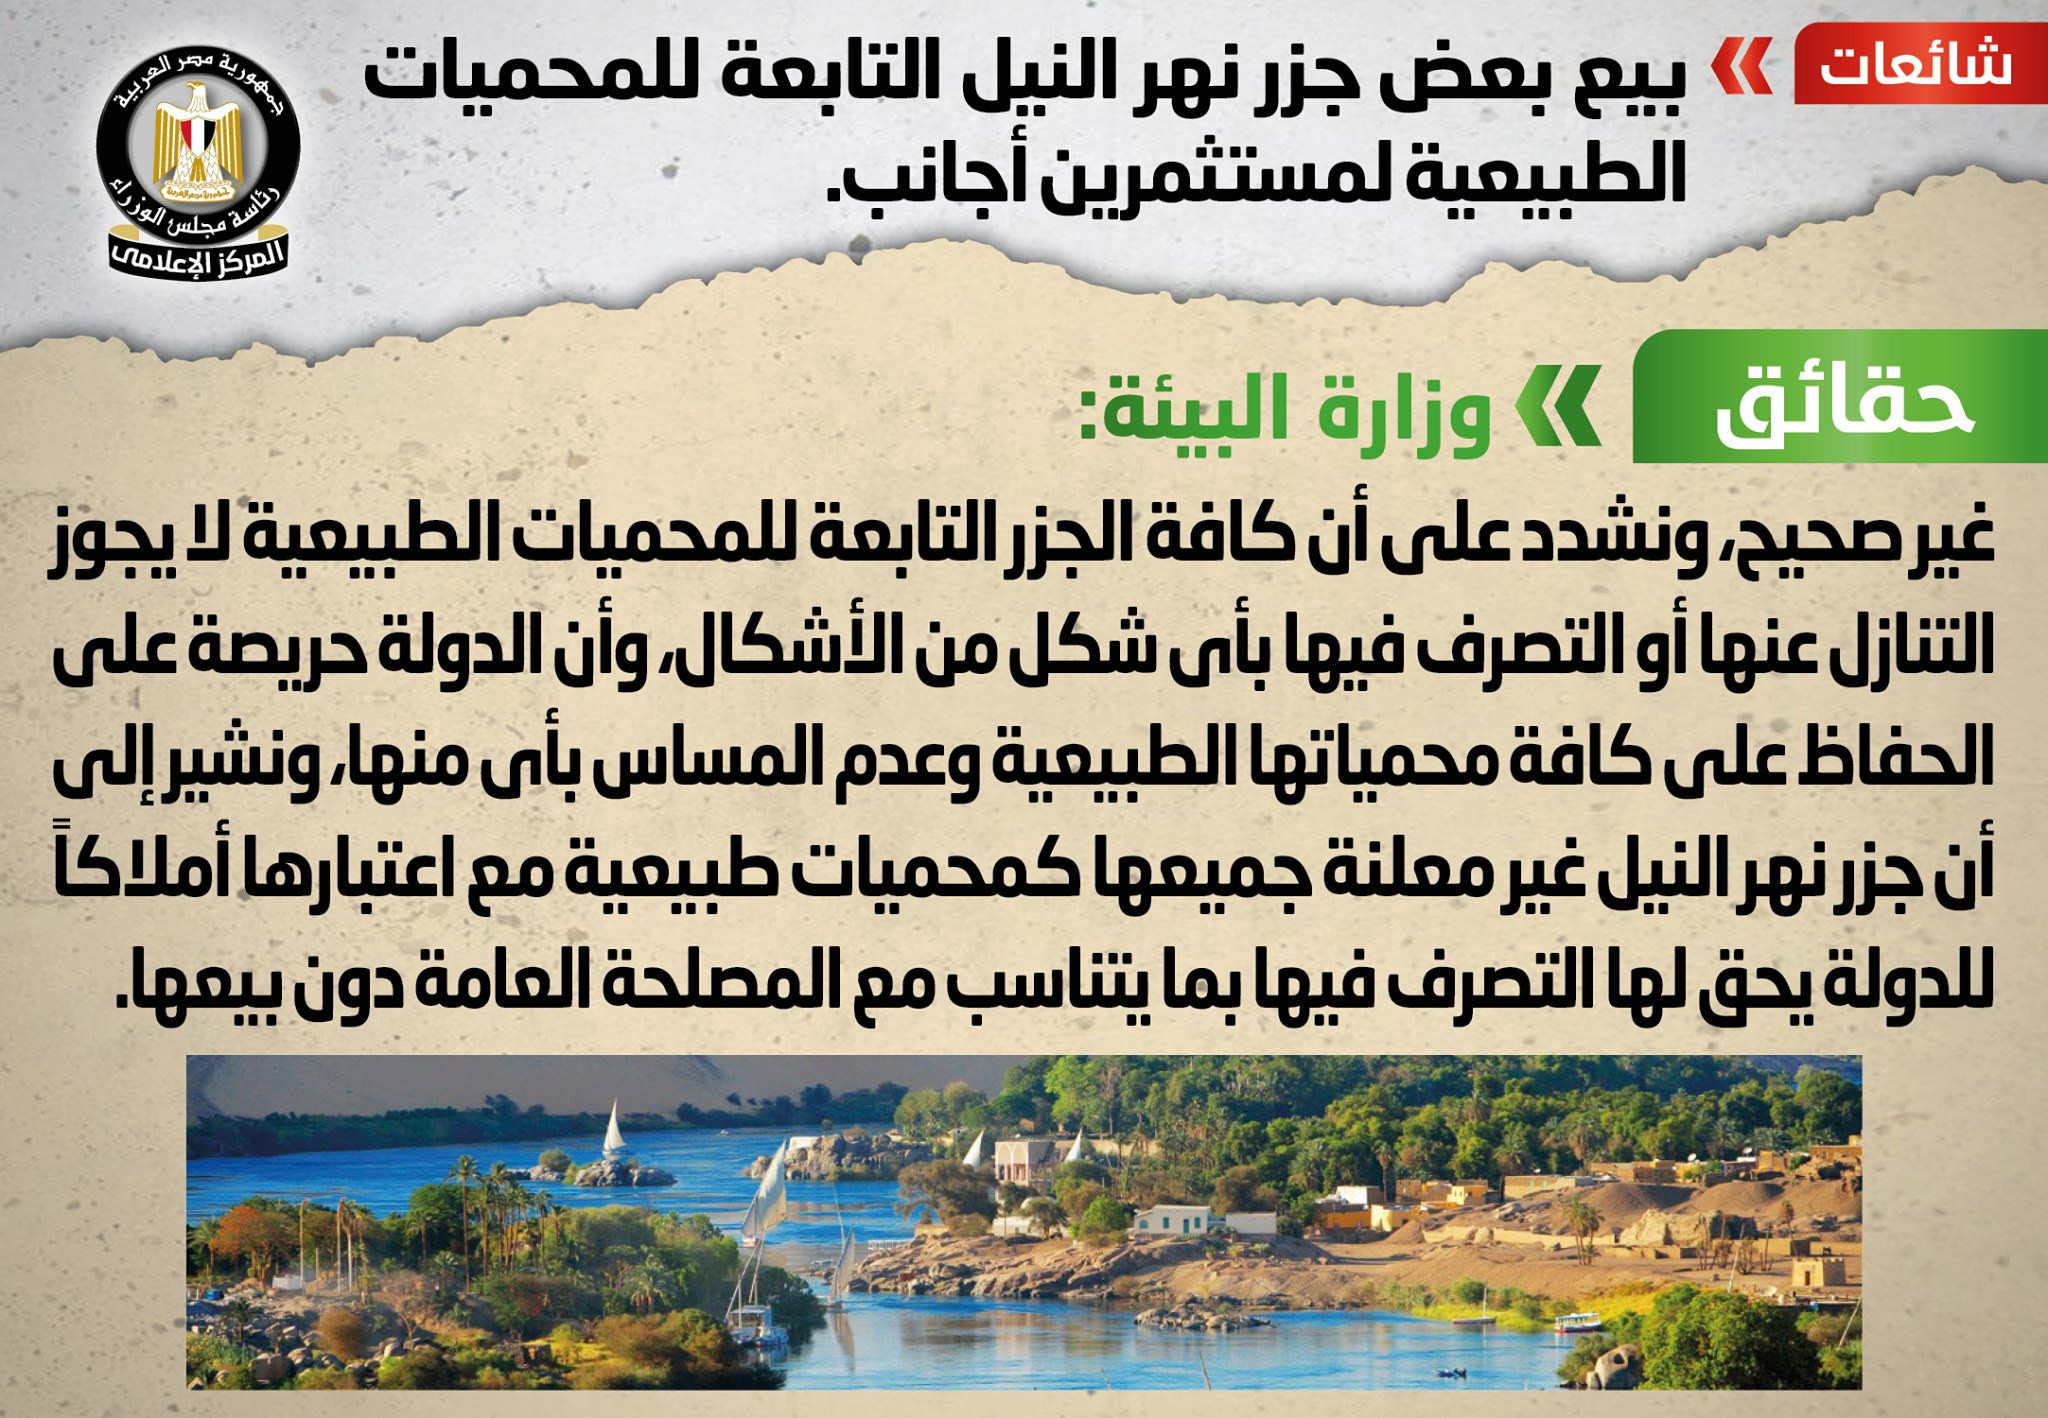 بيع بعض جزر نهر النيل التابعة للمحميات الطبيعية لمستثمرين أجانب